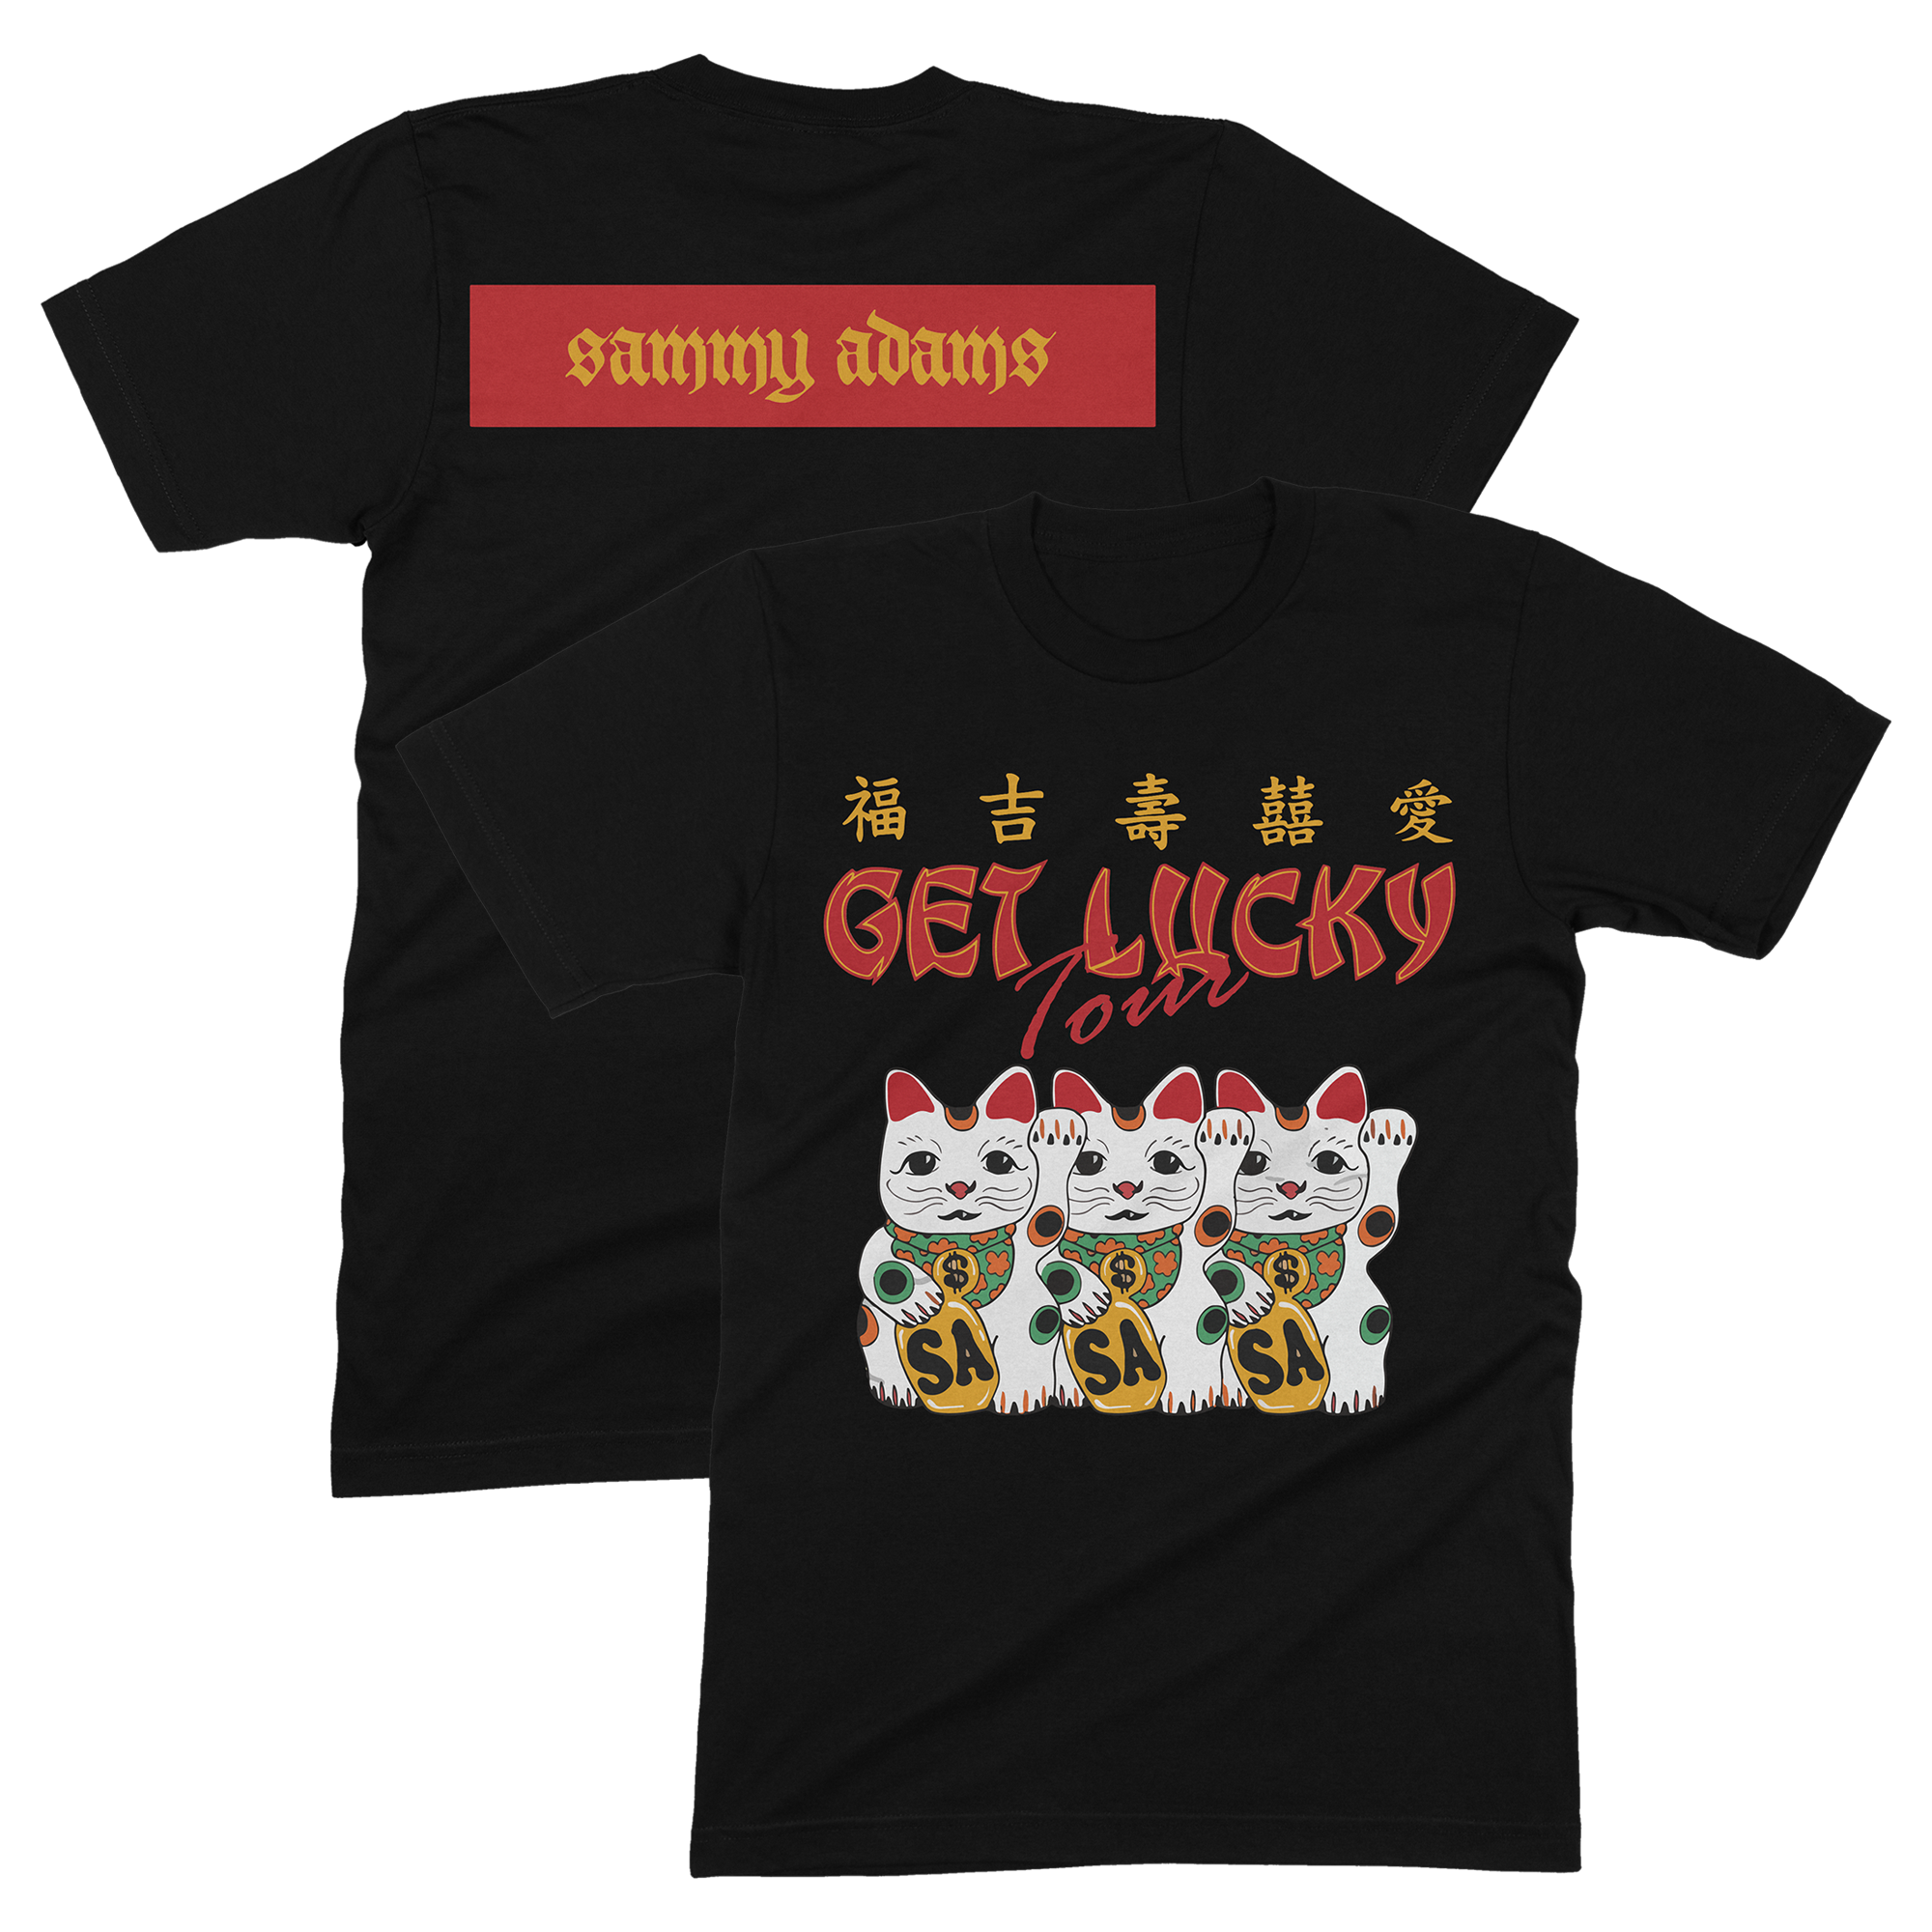 Sammy Adams - Get Lucky Shirt